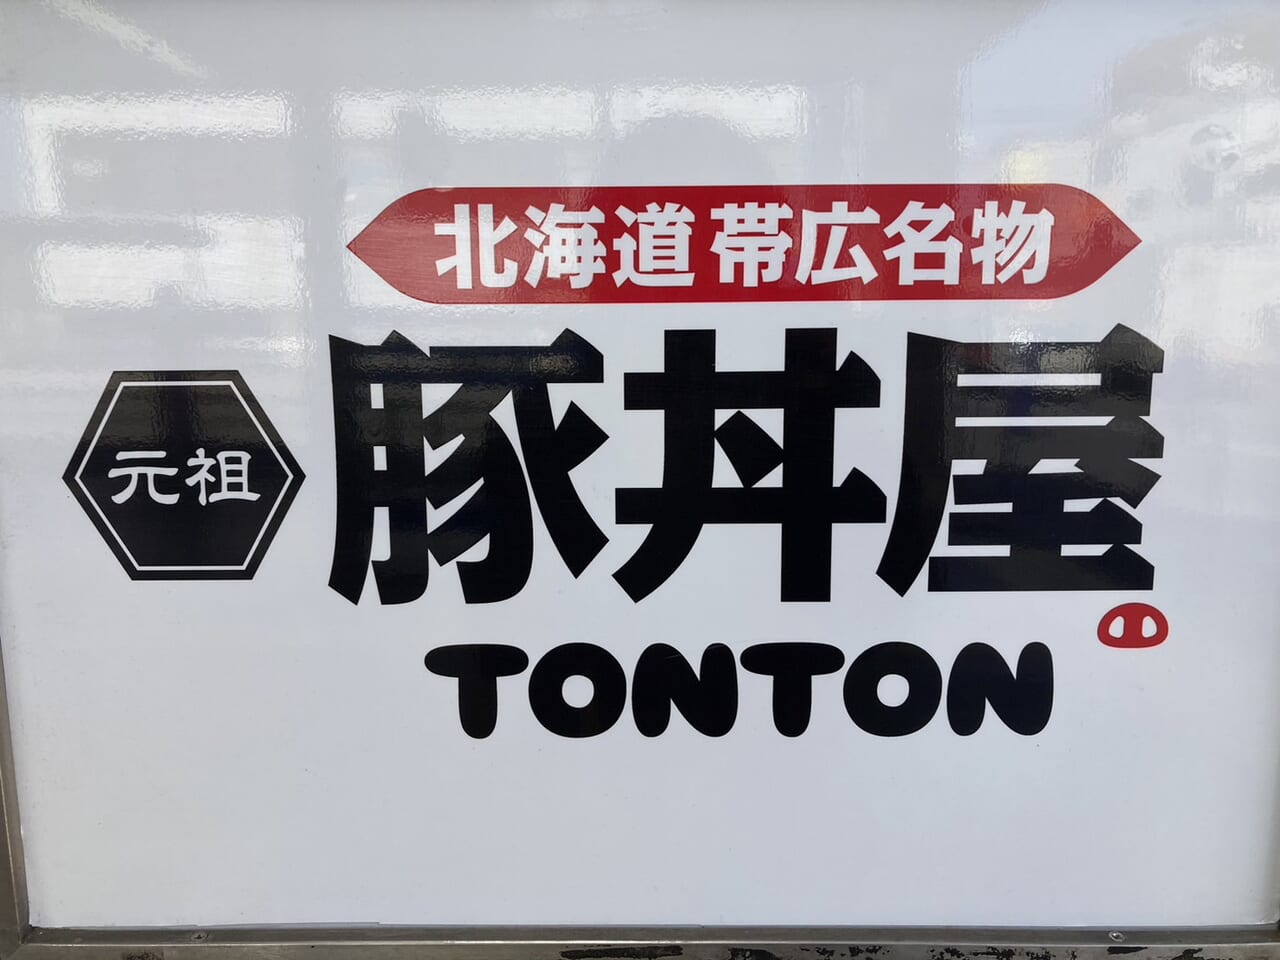 元祖豚丼屋TONTON看板